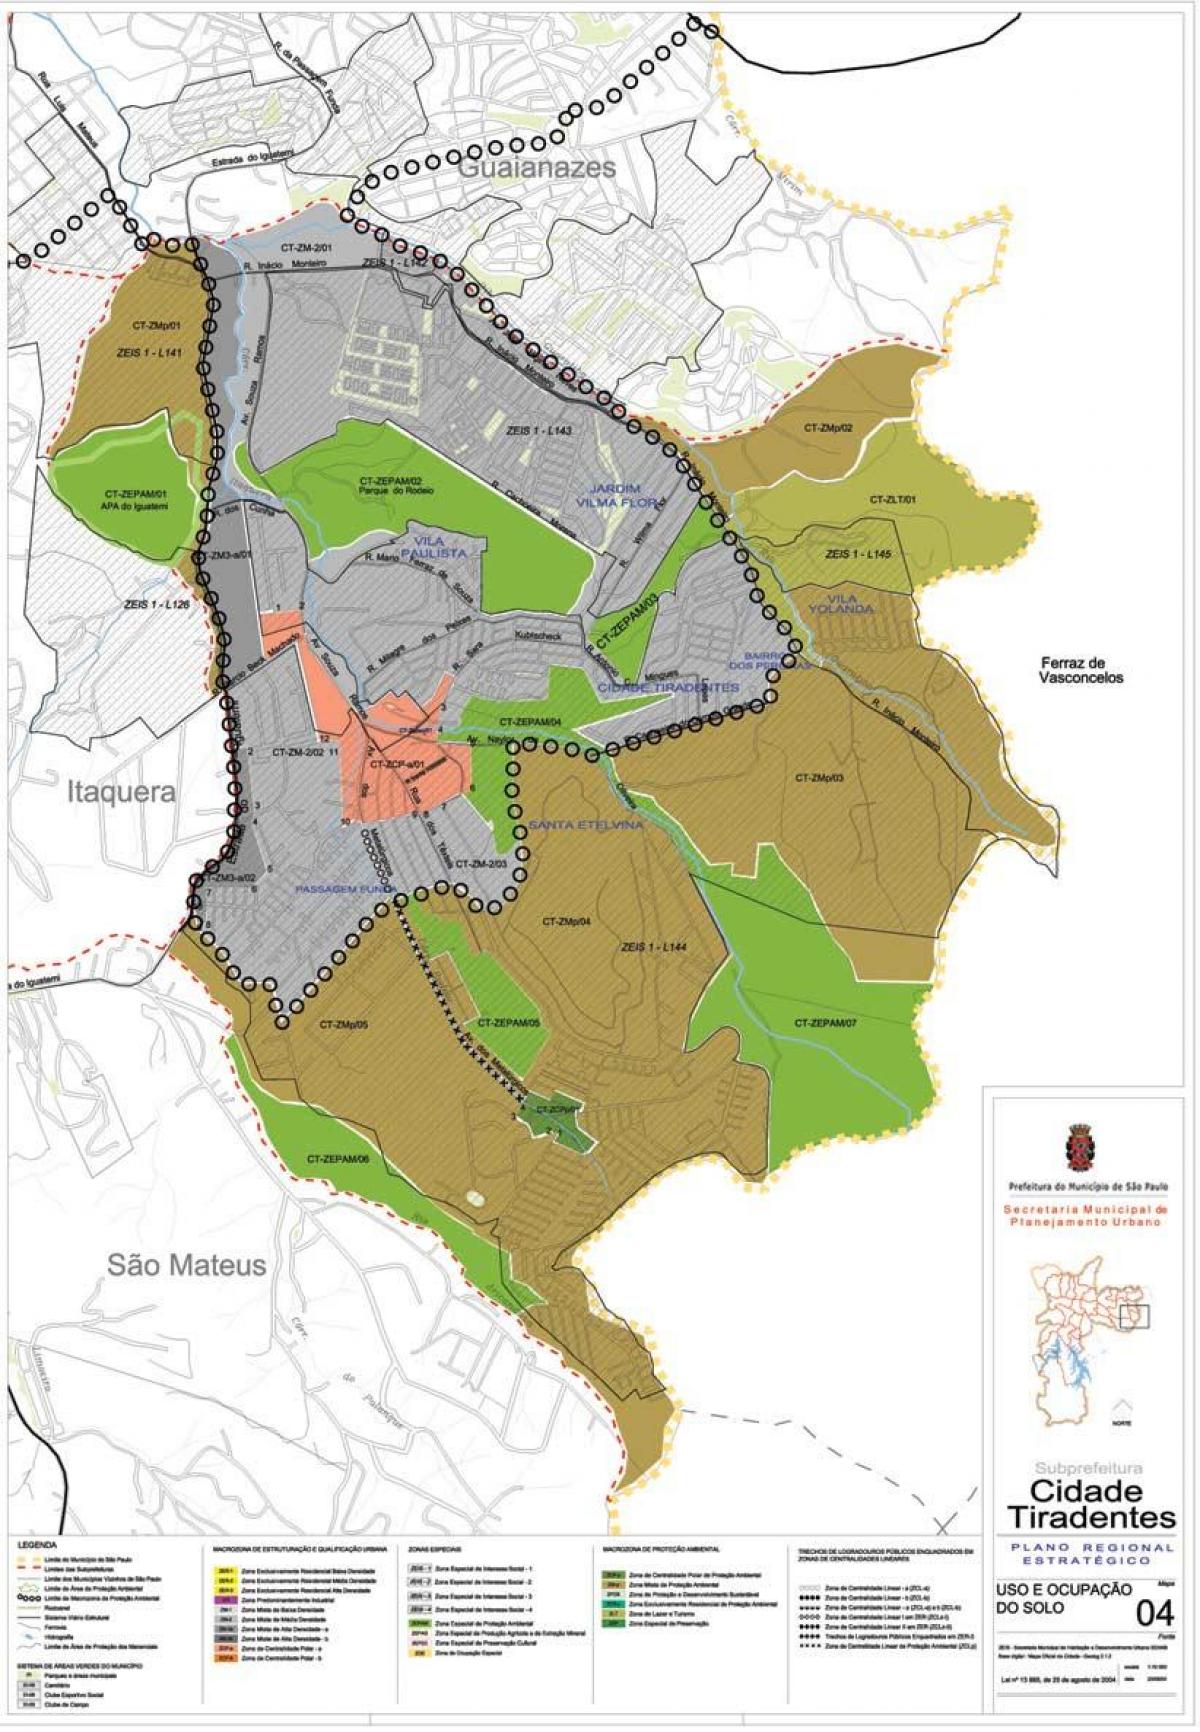 Peta Kota Tiradentes São Paulo - Pekerjaan tanah